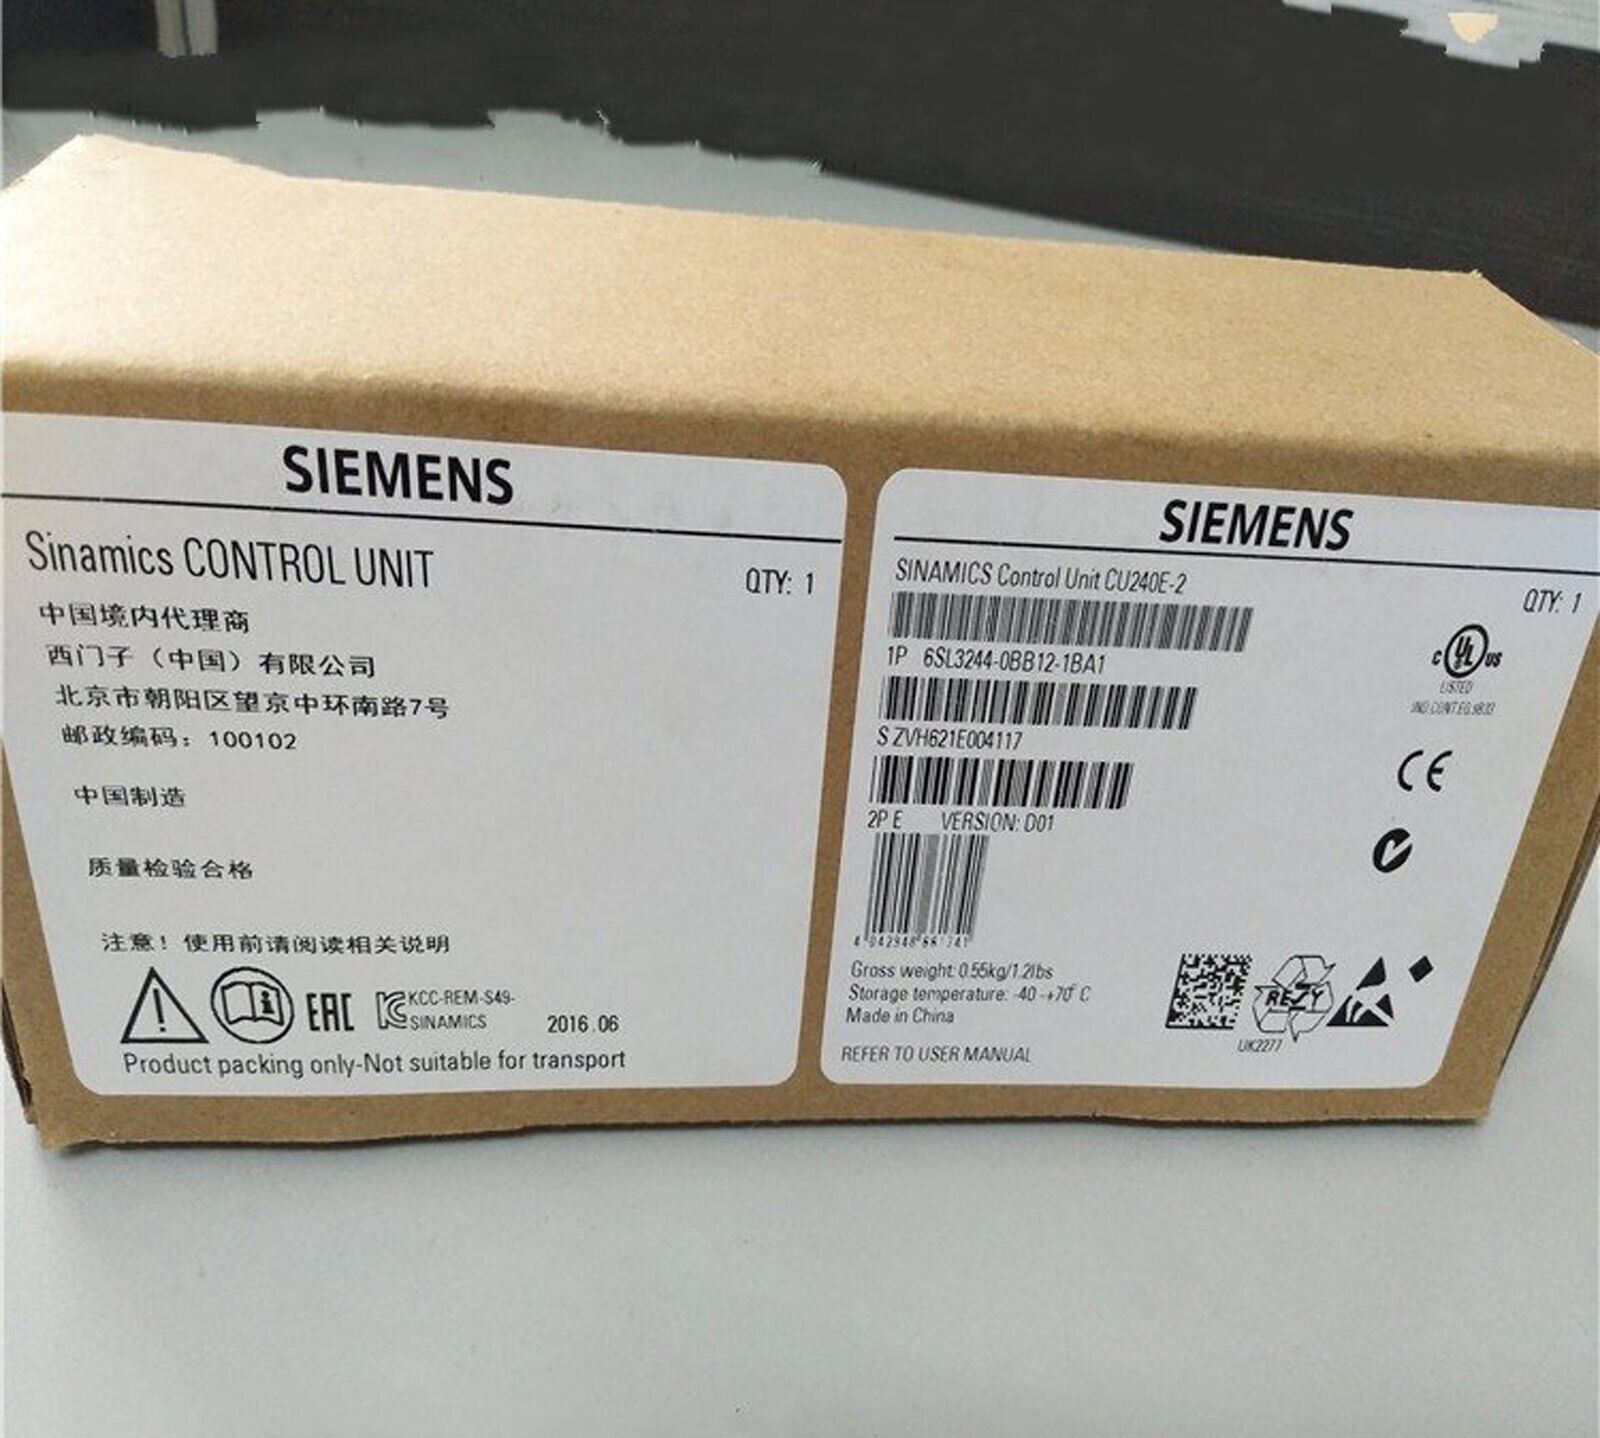 new ONE Siemens Control Unit 6SL3244-0BB12-1BA1 6SL32440BB121BA1  In Box